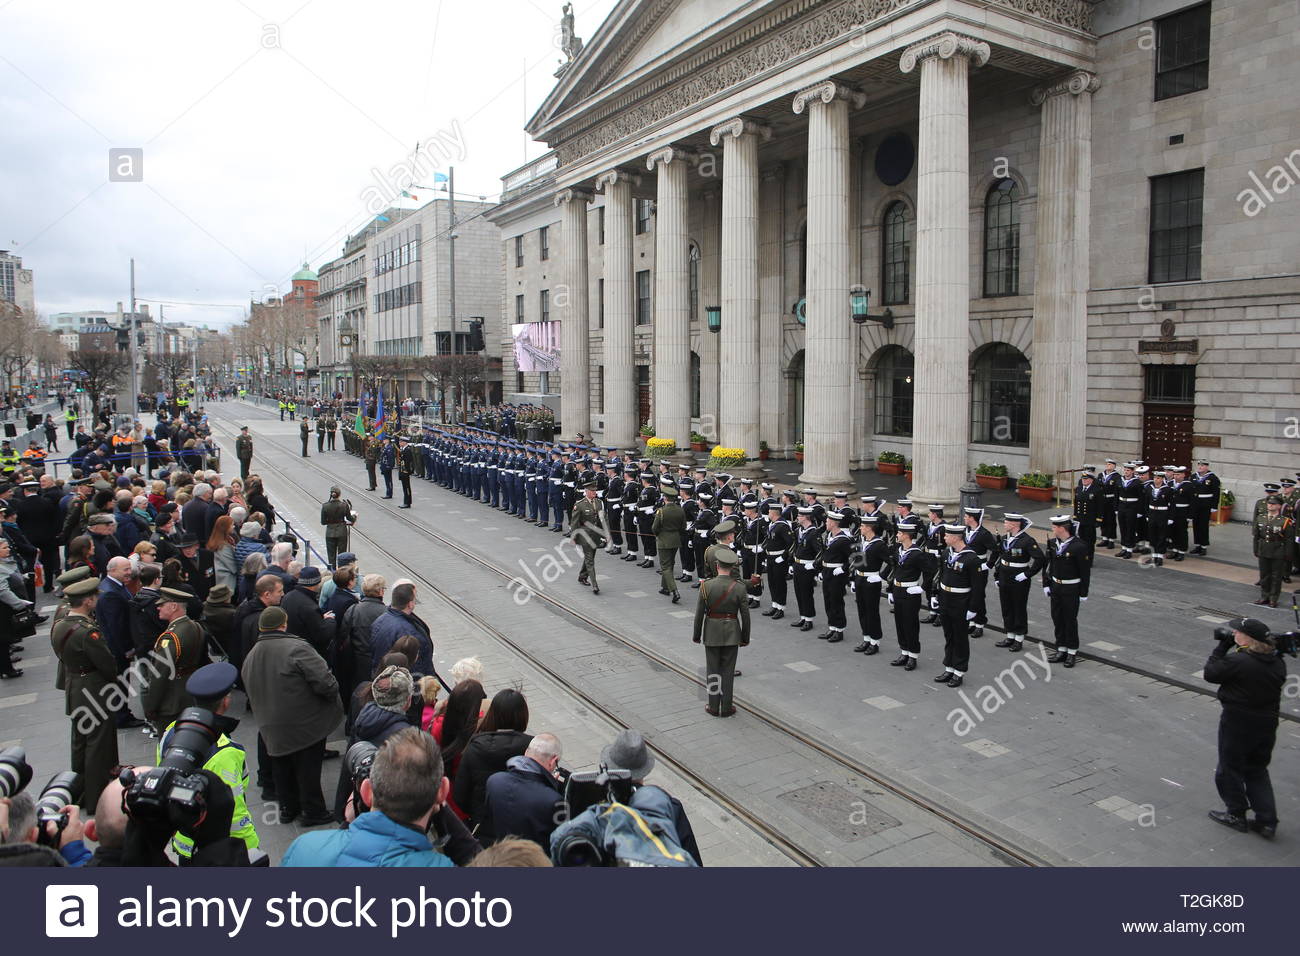 Les soldats participent à la cérémonie de Pâques à l'extérieur de l'objet Stratégie de groupe à Dublin en l'honneur de l'Insurrection de Pâques de 1916 contre la Grande-Bretagne Banque D'Images